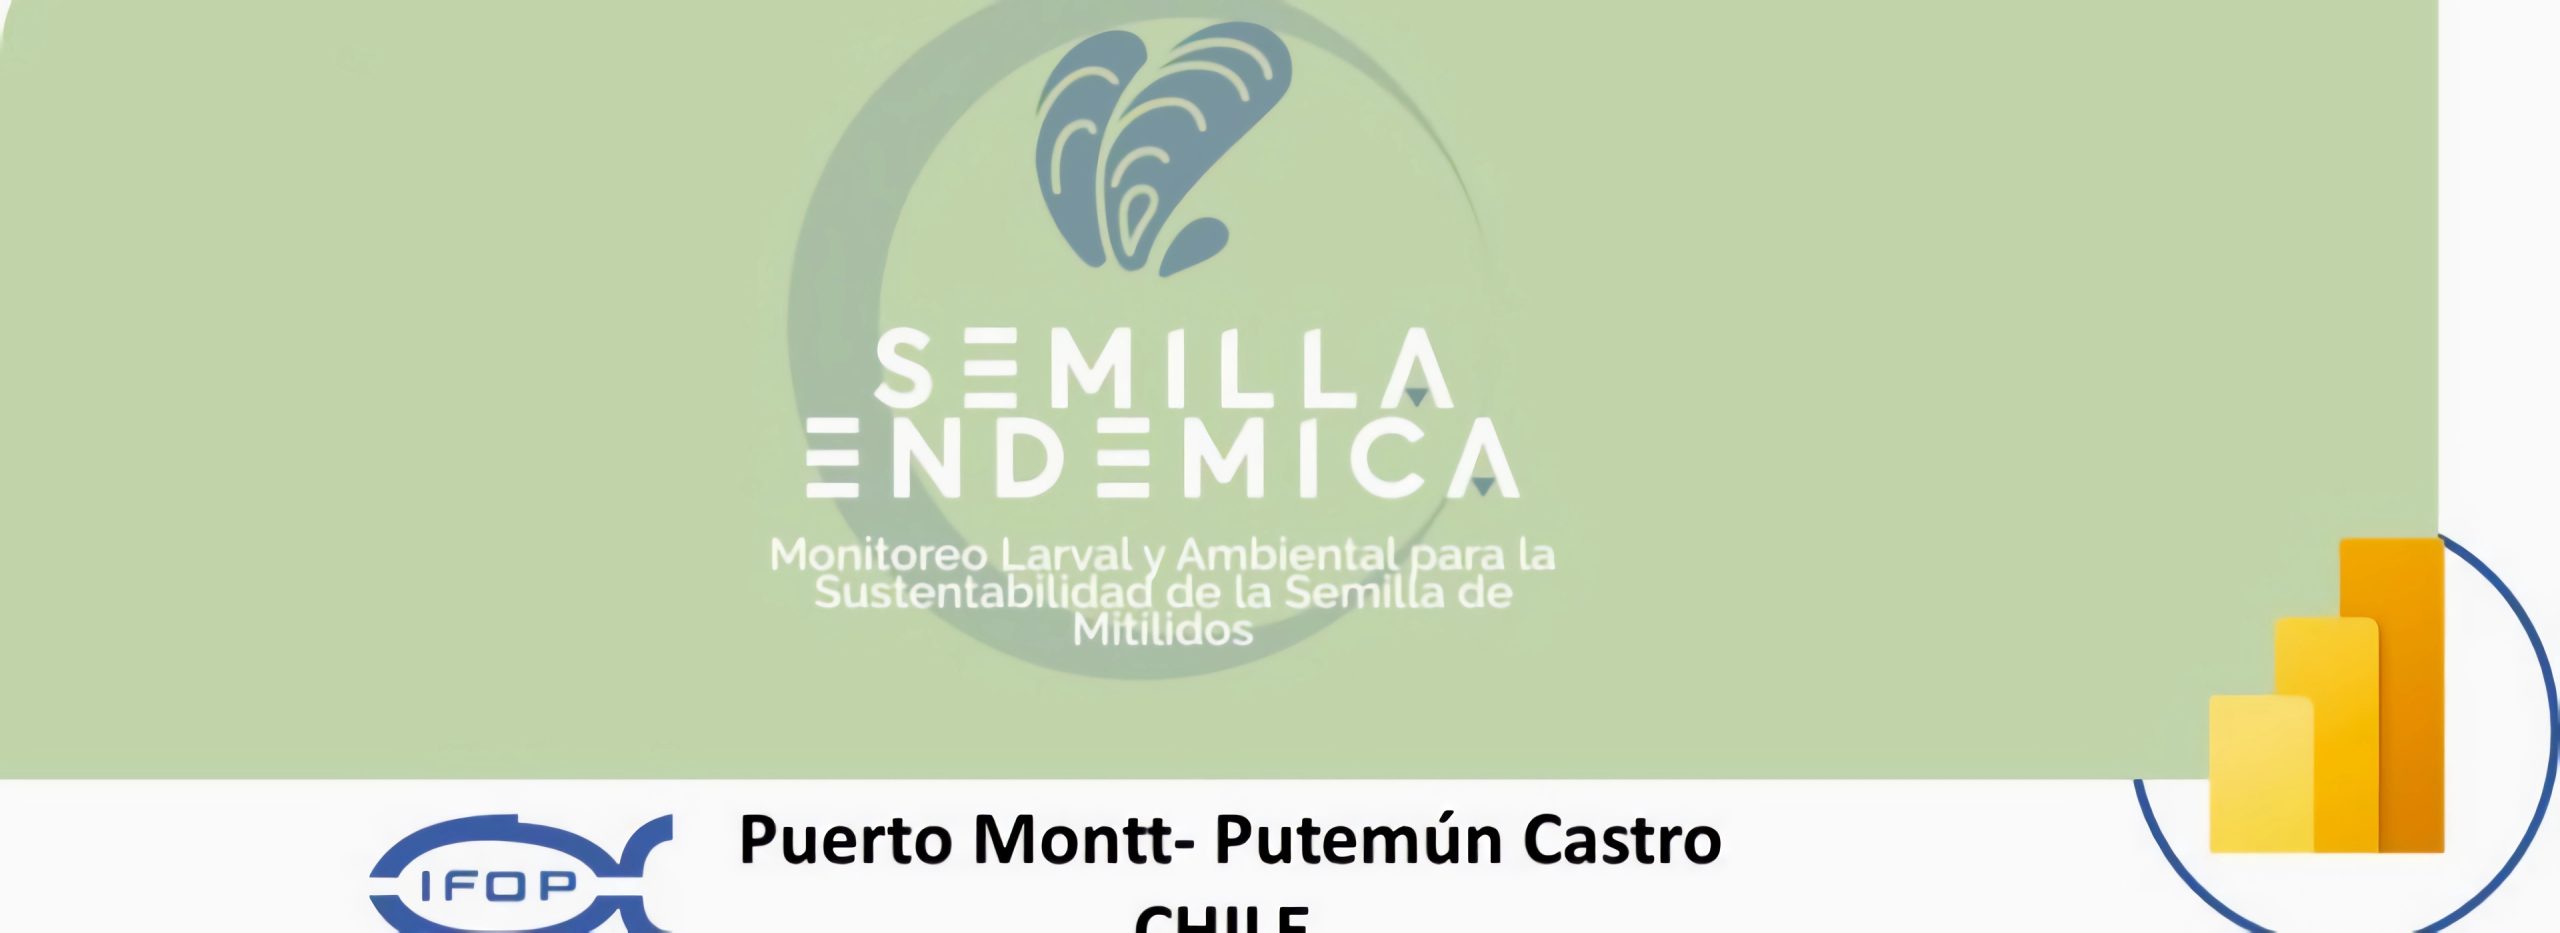 Plataforma digital “Semilla endémica” incorporó sección “Encuestas al sector mitilicultor”